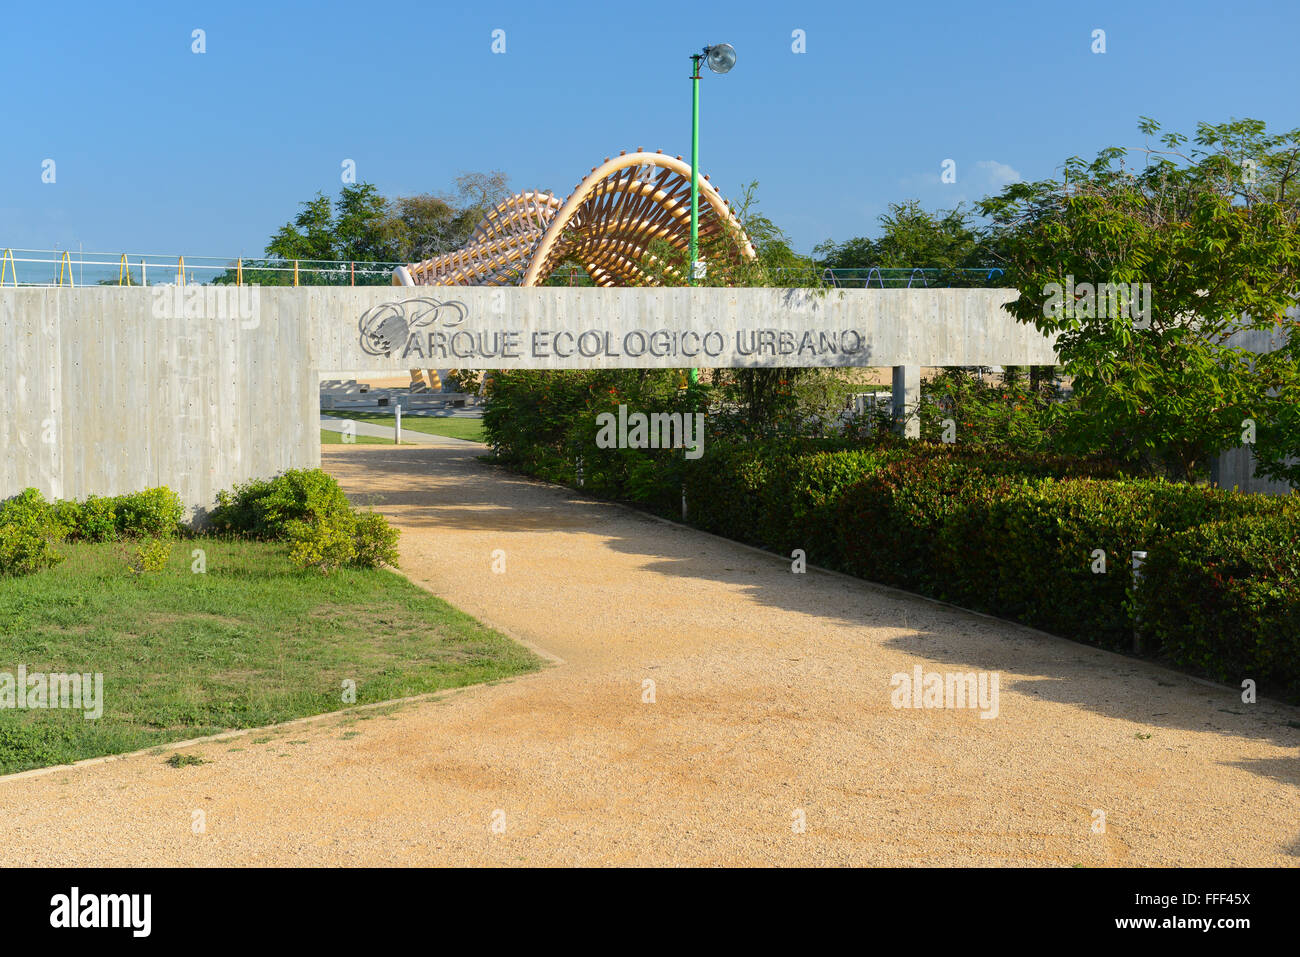 Urbano parco ecologico (Parque Ecologico Urbano) è stato creato come un polmone verde della città. Ponce, Puerto Rico. Isola dei caraibi. Foto Stock